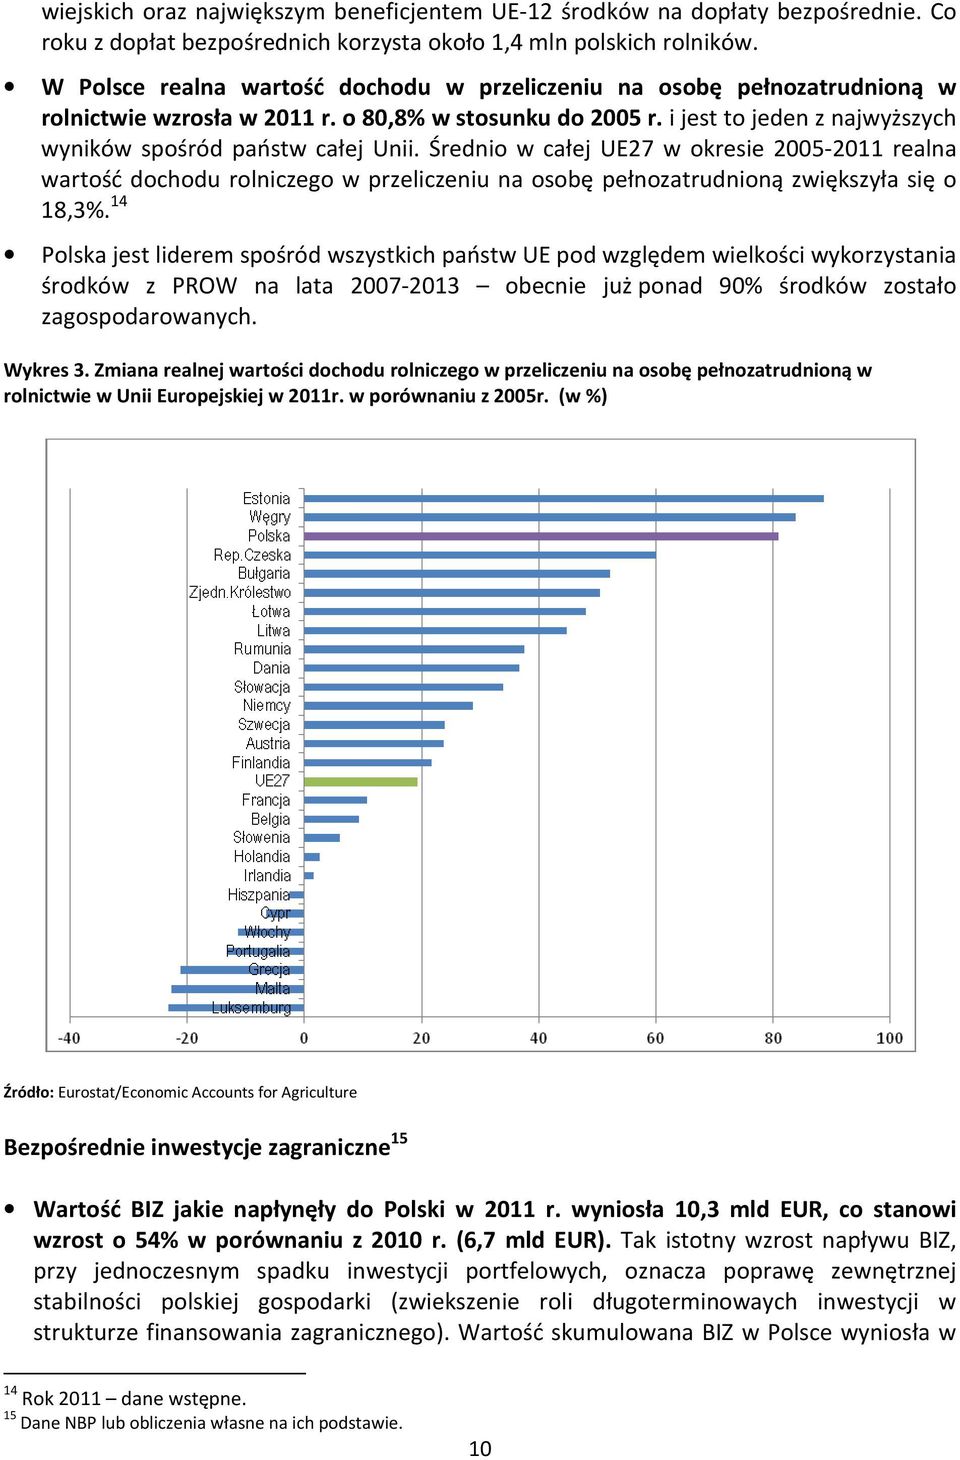 Średnio w całej UE27 w okresie 2005-2011 realna wartość dochodu rolniczego w przeliczeniu na osobę pełnozatrudnioną zwiększyła się o 18,3%.